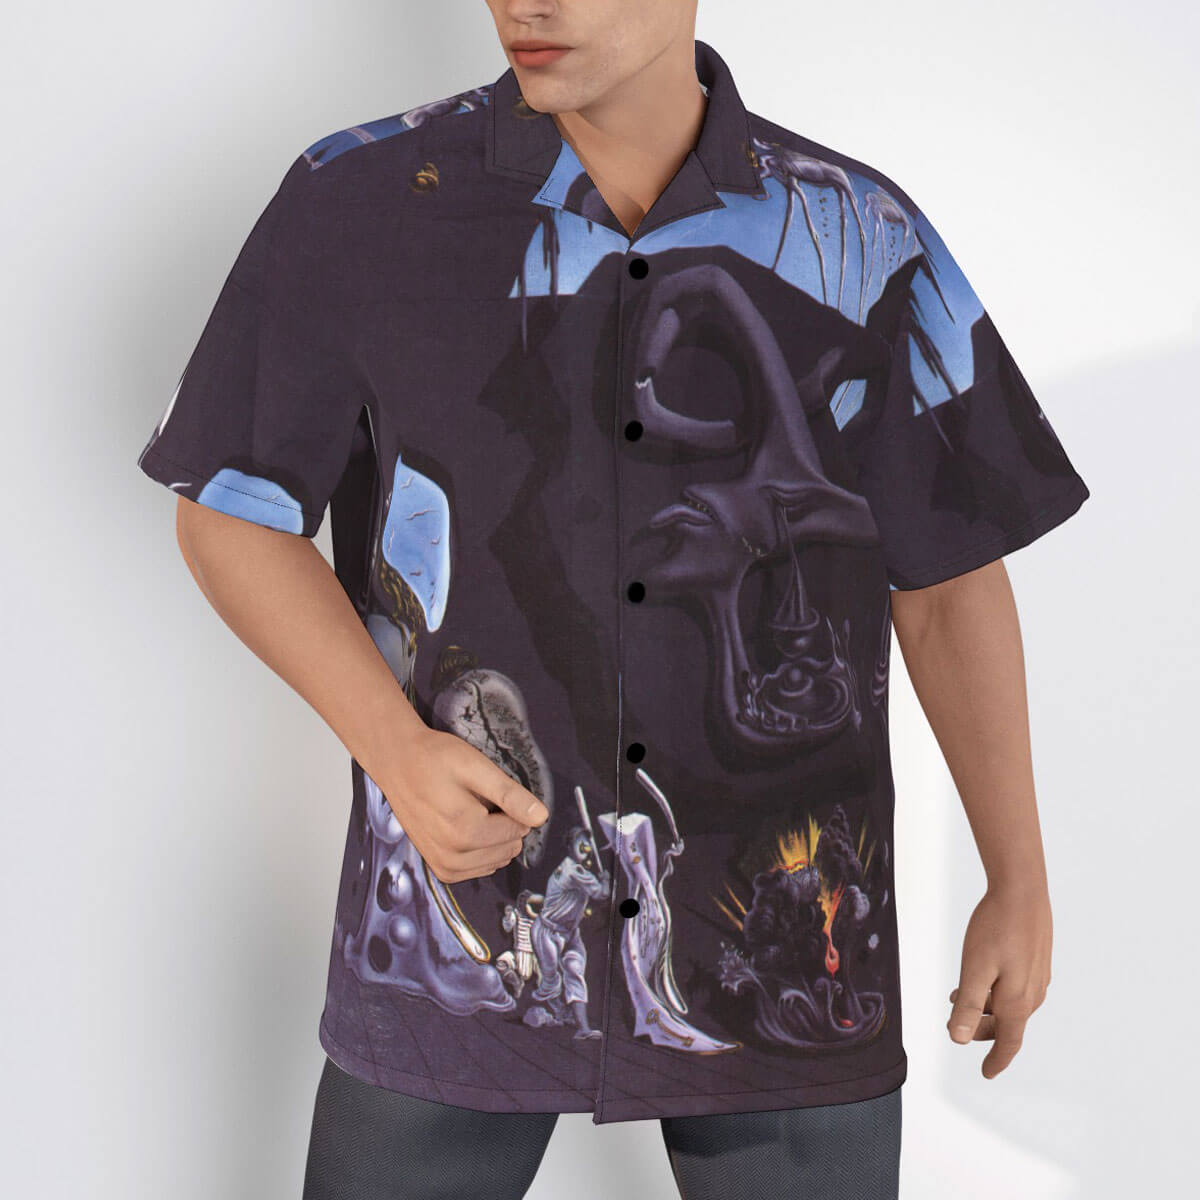 Melancholy Atomic by Salvador Dali Hawaiian shirt on display